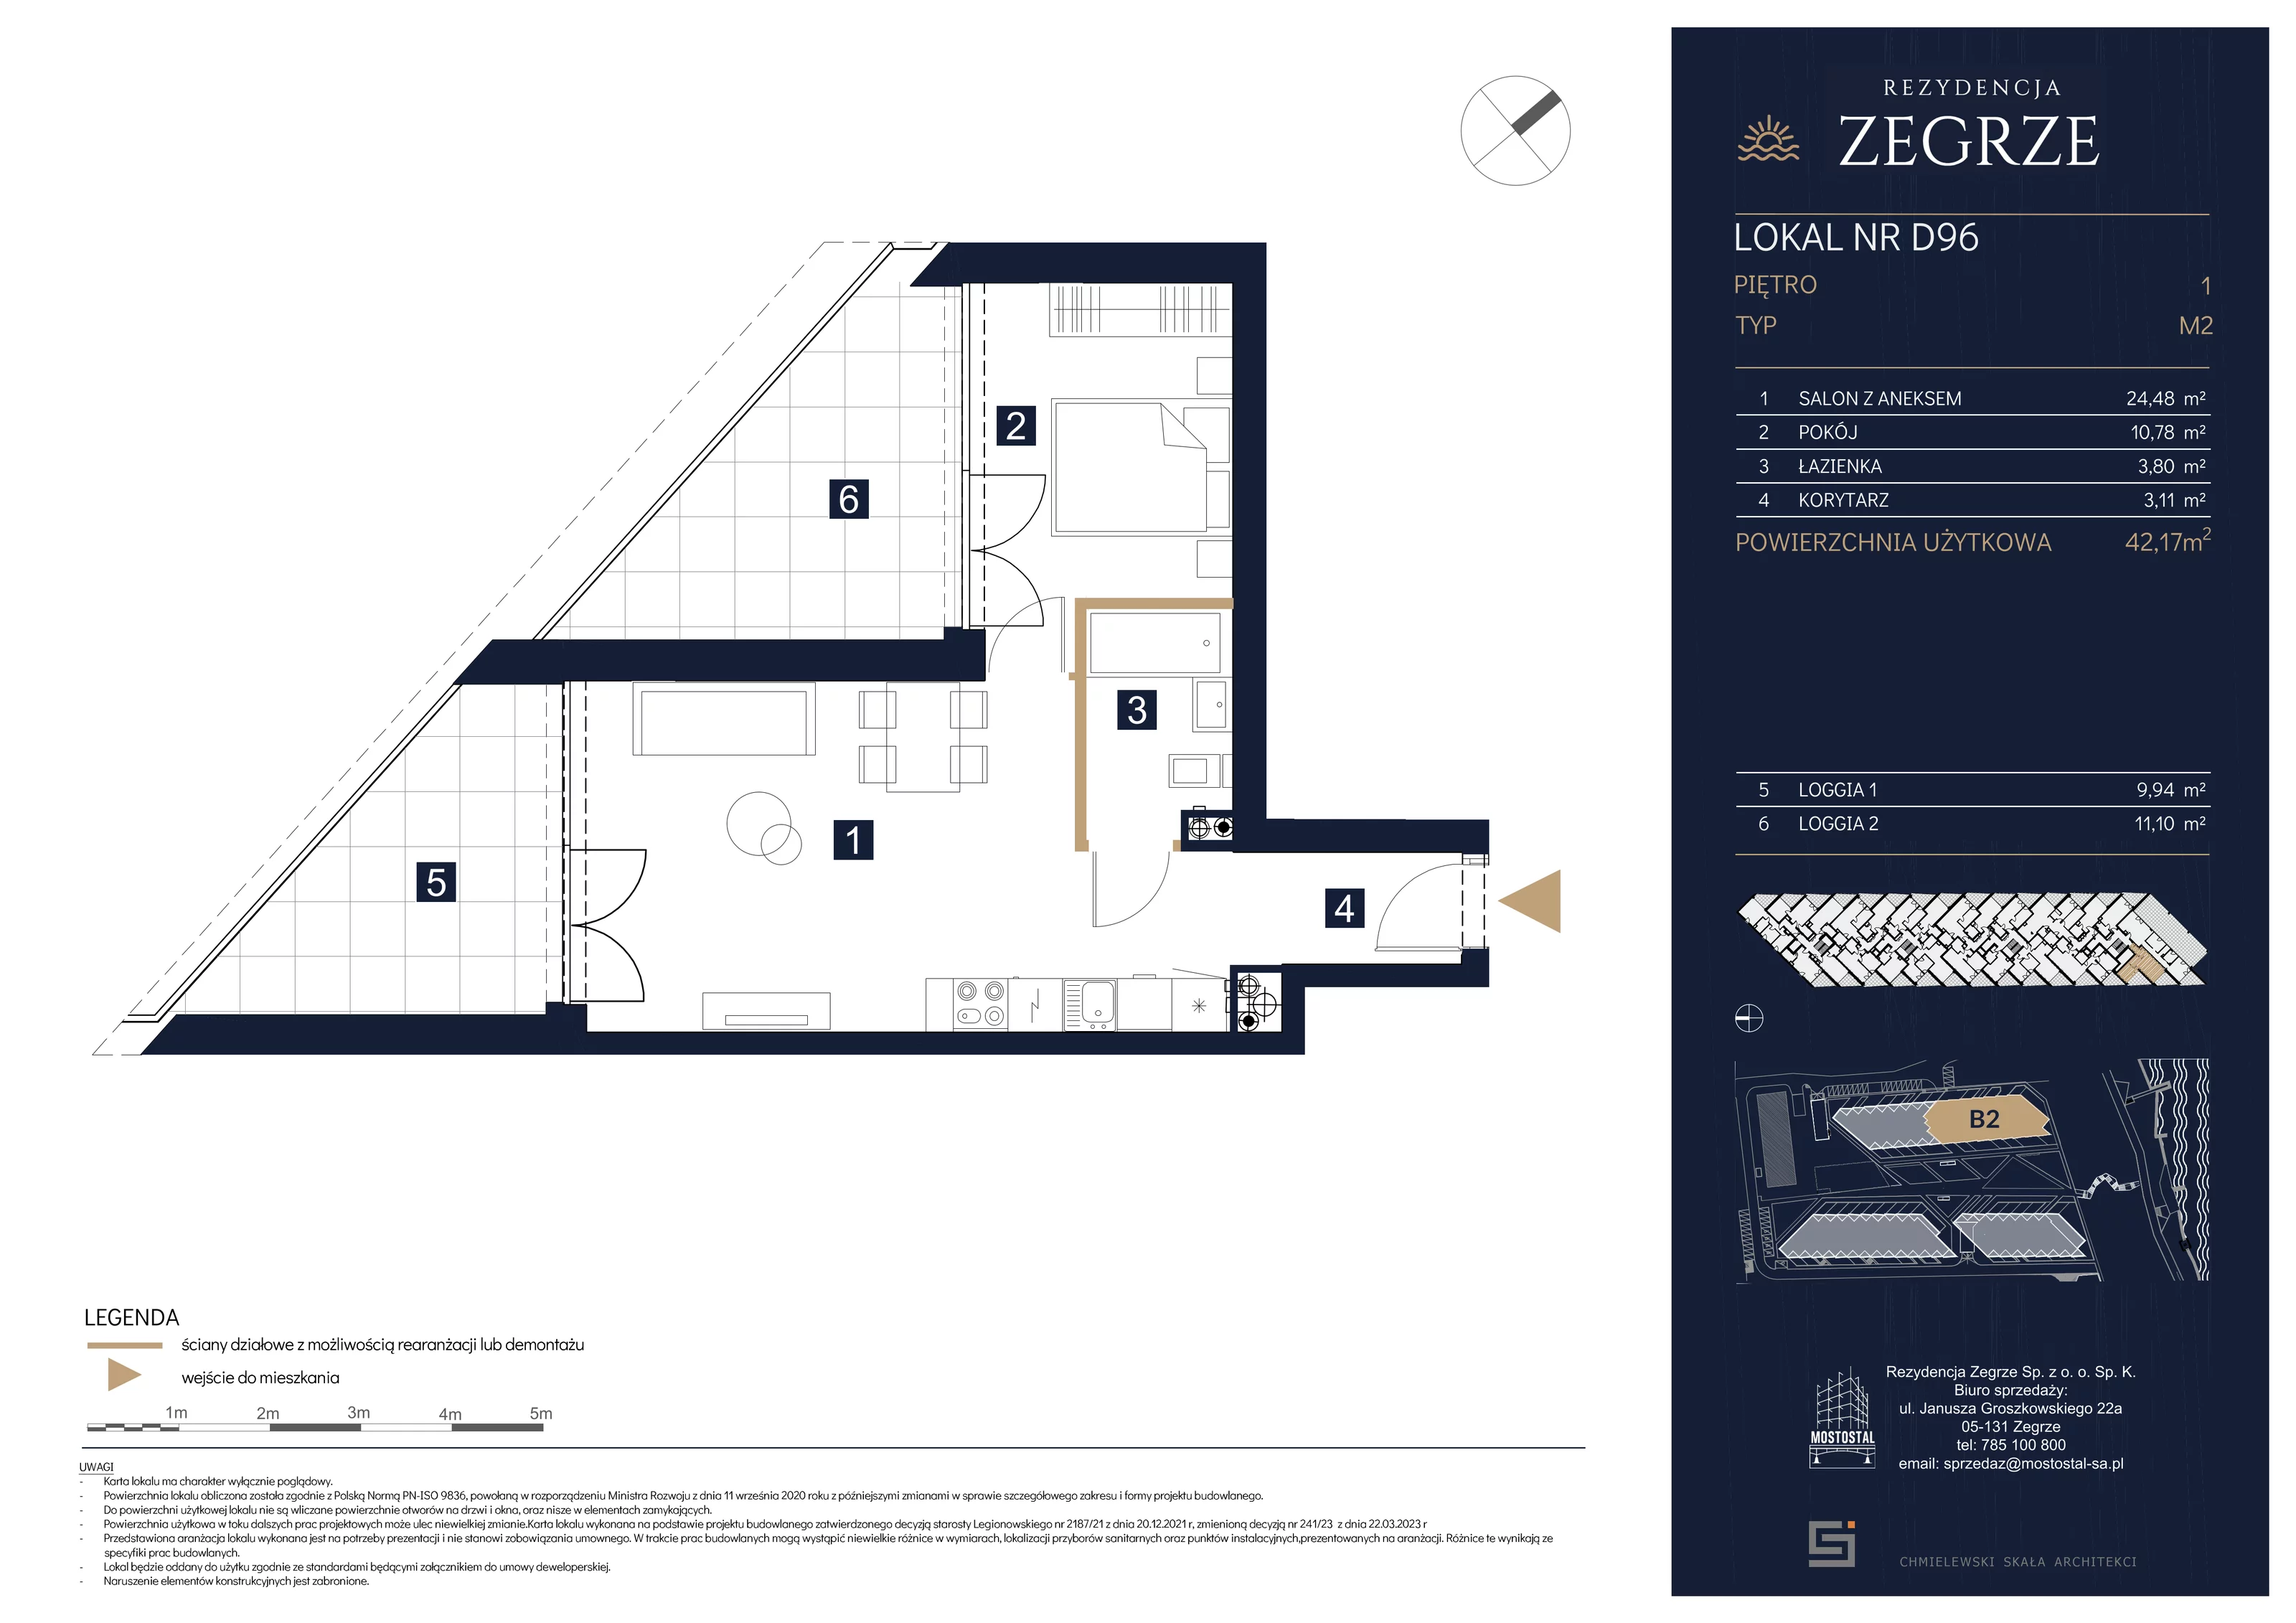 Mieszkanie 42,17 m², piętro 1, oferta nr B2.2.D.96, Rezydencja Zegrze II, Zegrze, ul. Groszkowskiego 22A